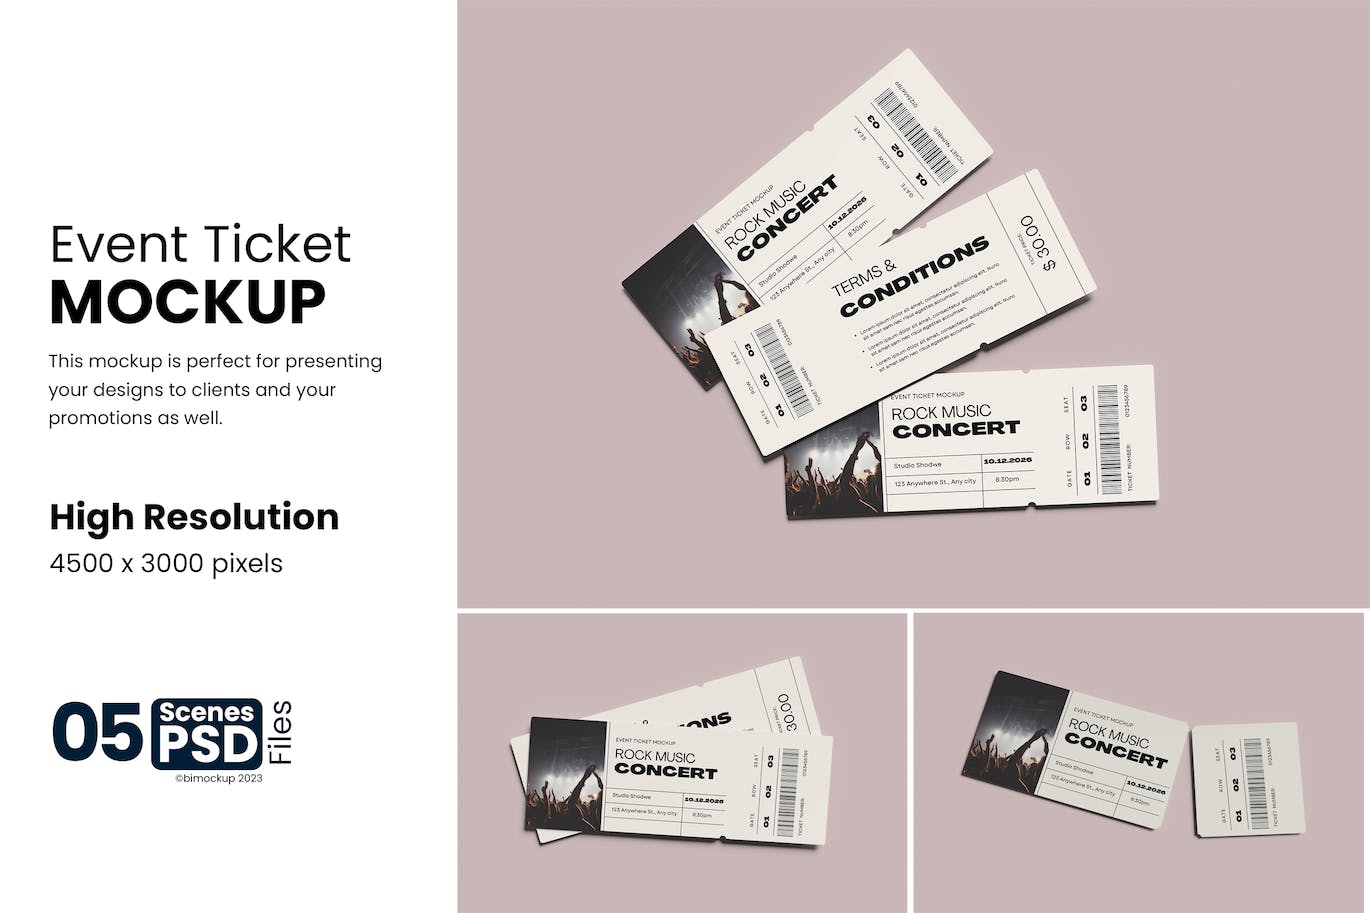 演唱会活动门票设计样机模板 Event Ticket Mockup 样机素材 第1张